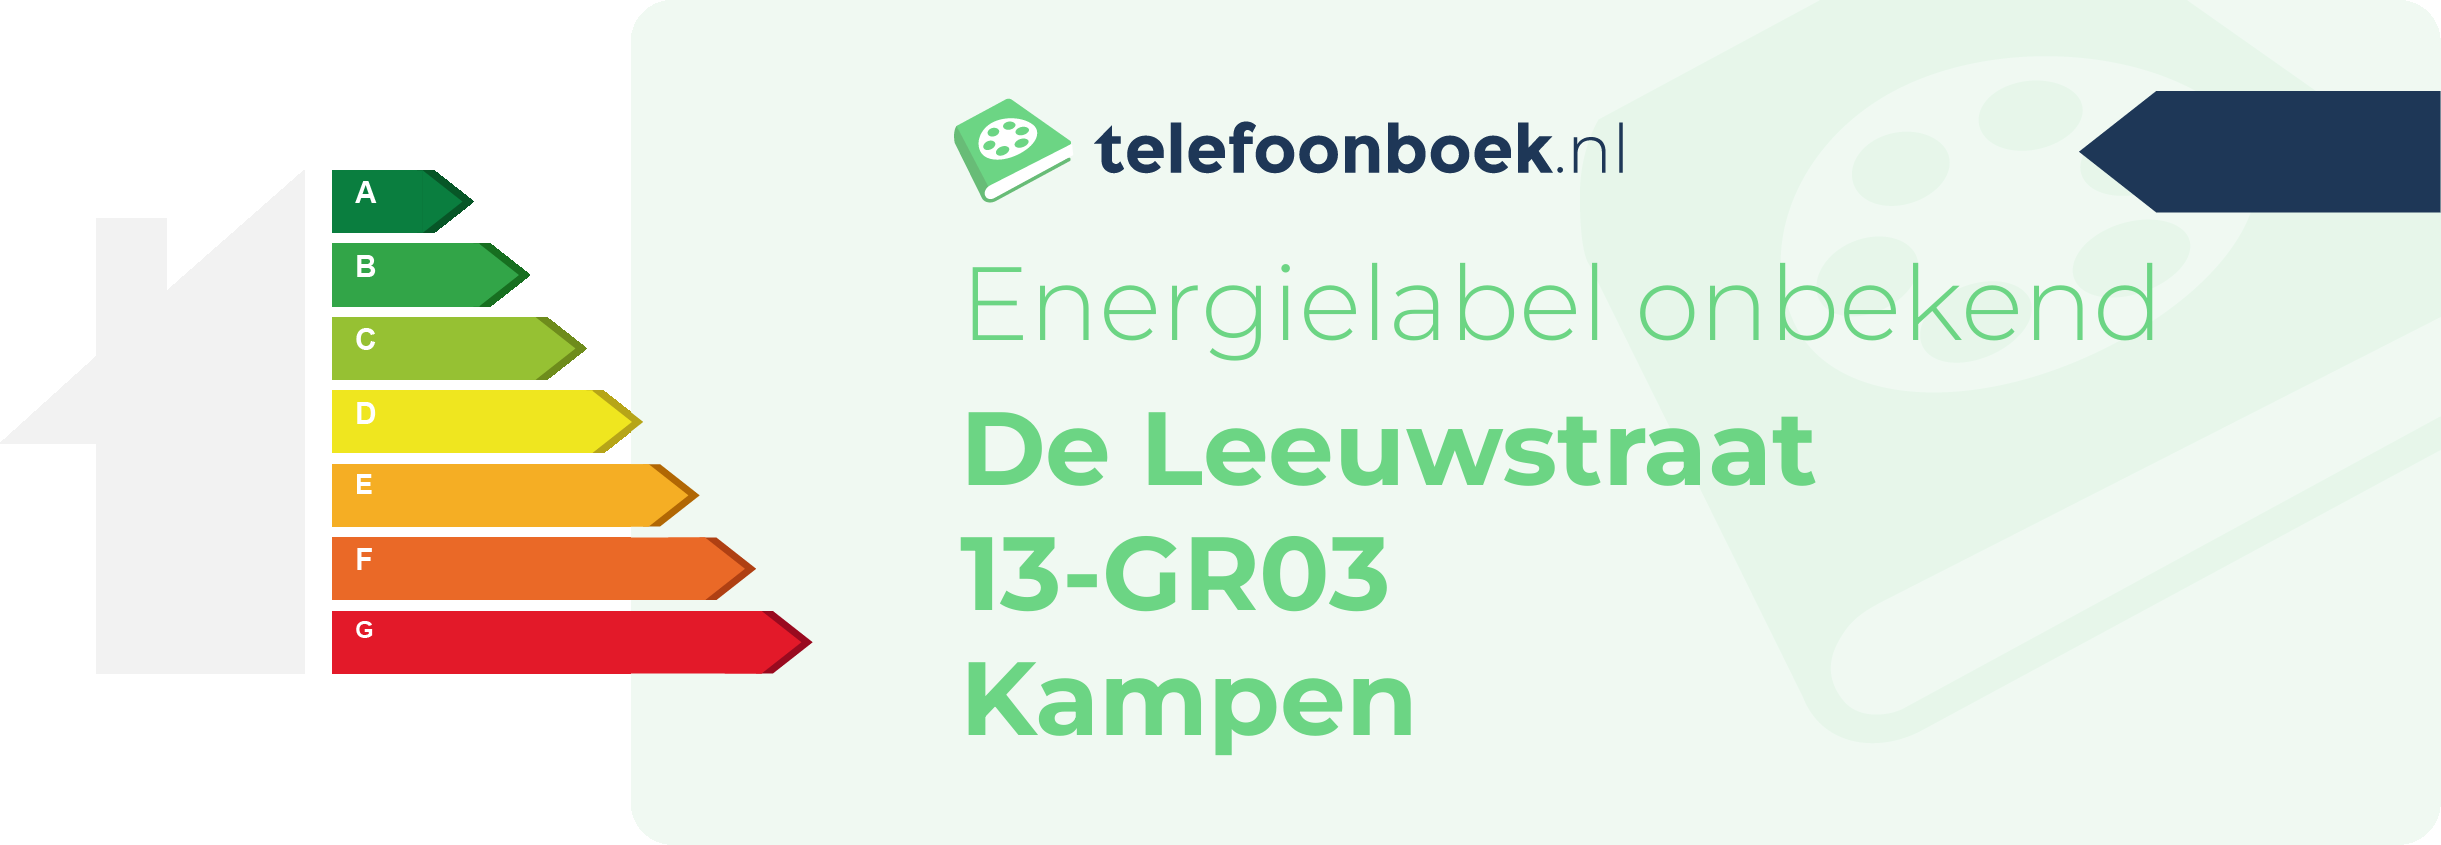 Energielabel De Leeuwstraat 13-GR03 Kampen